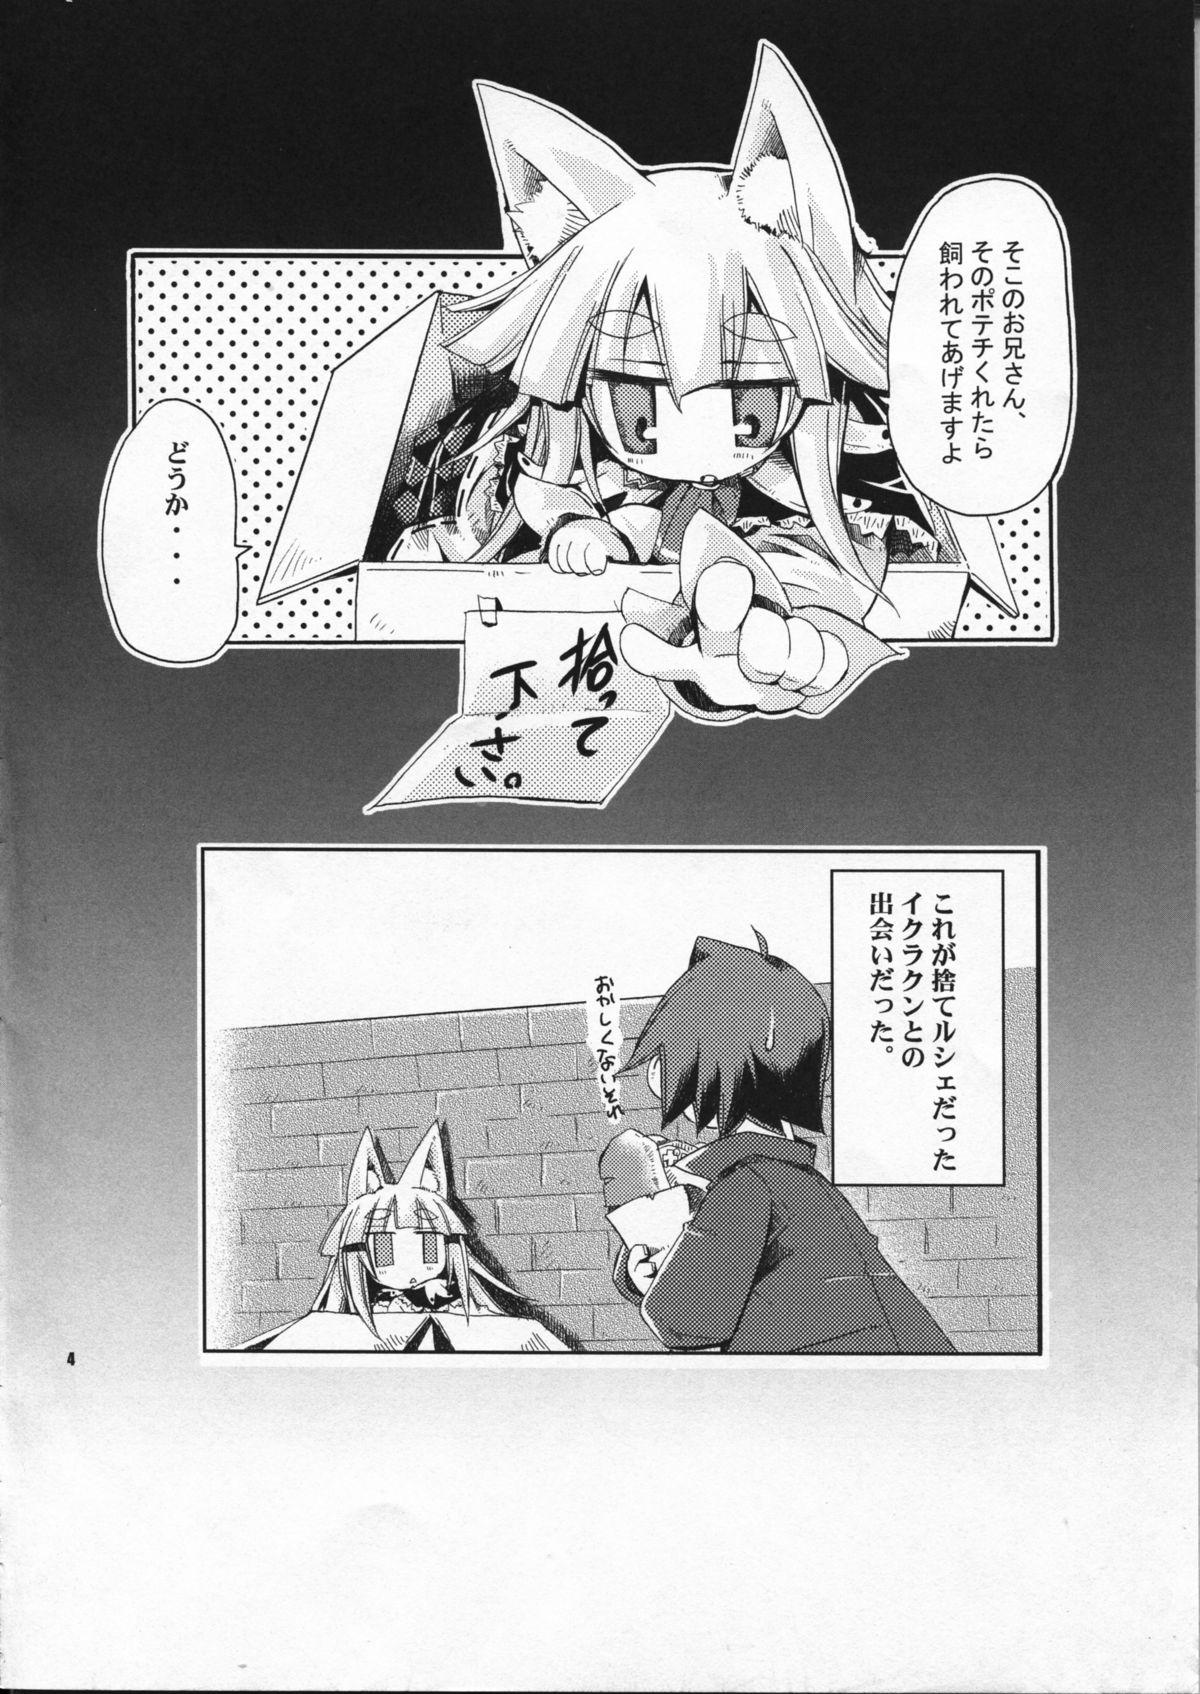 Fetiche Wagaya no Ikura no Kaikata - 7th dragon Suck - Page 4